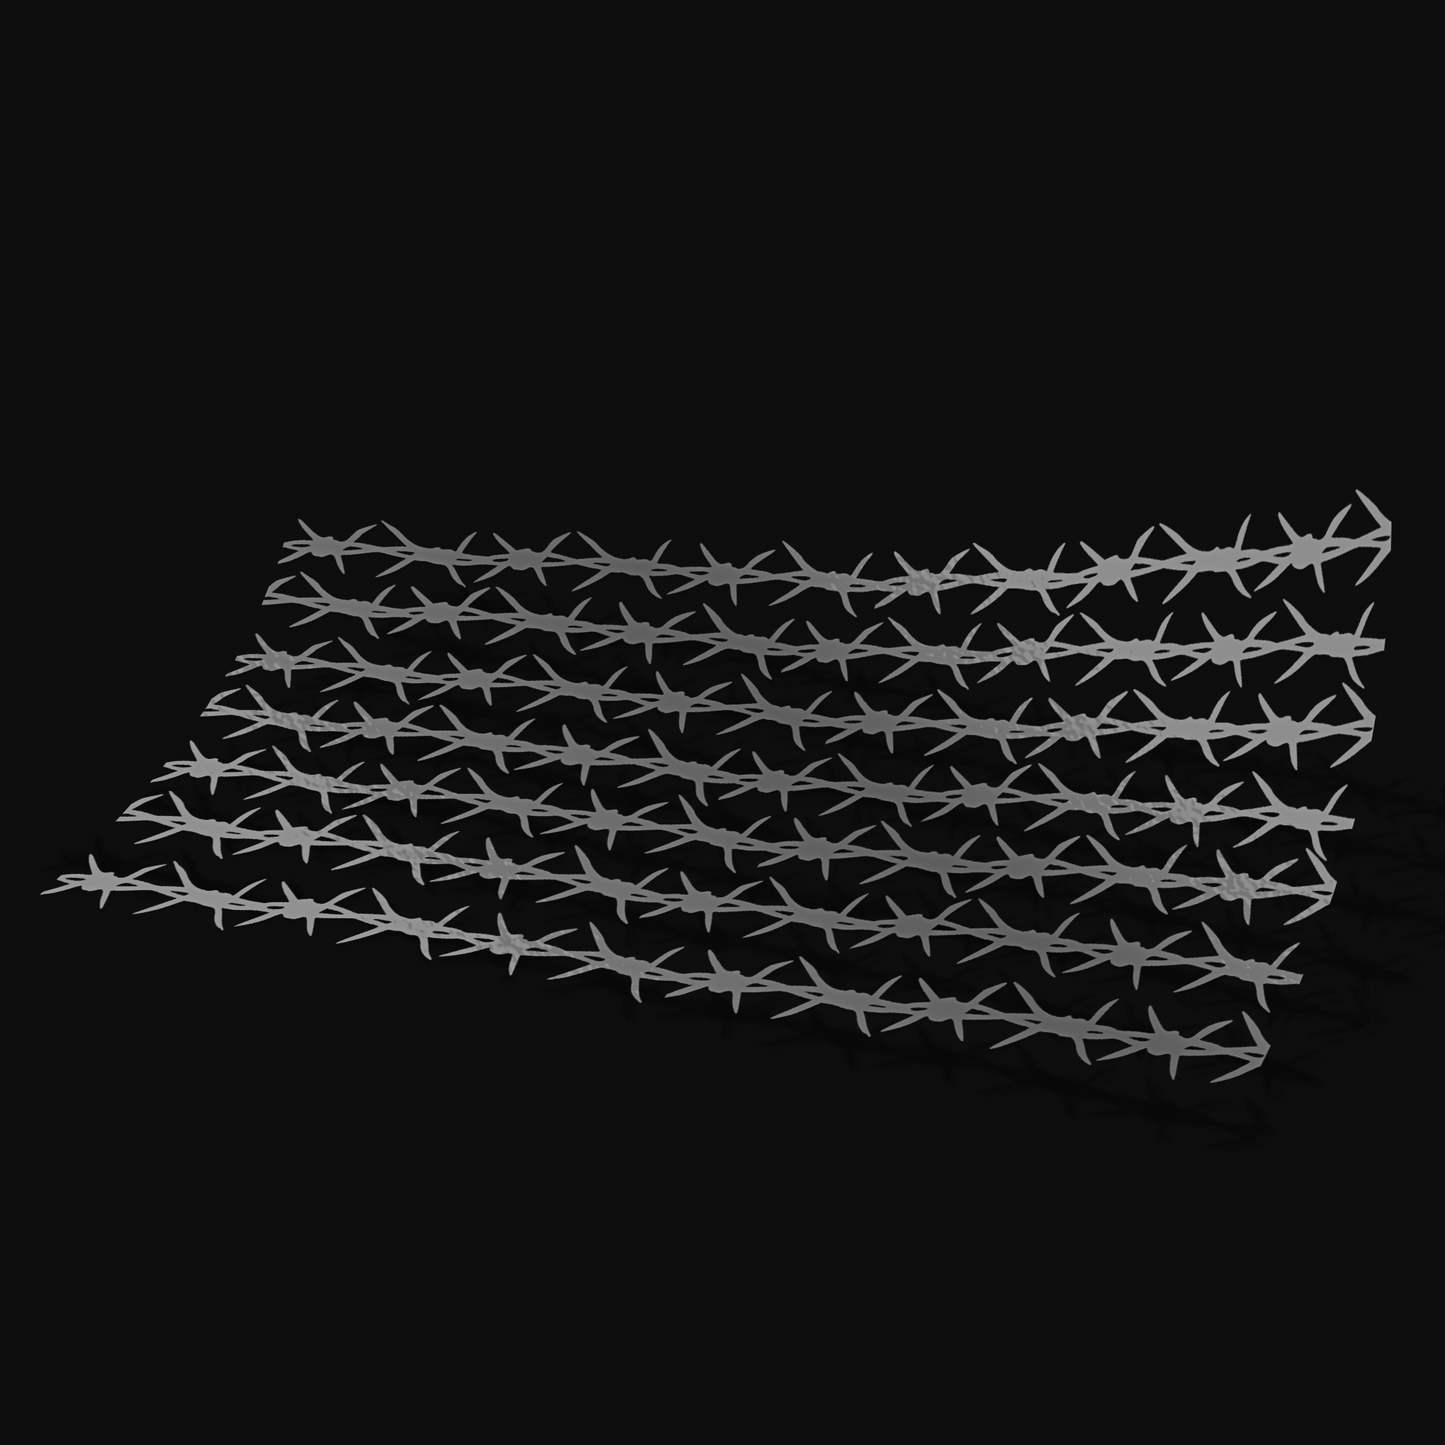 Barbed Wires V1